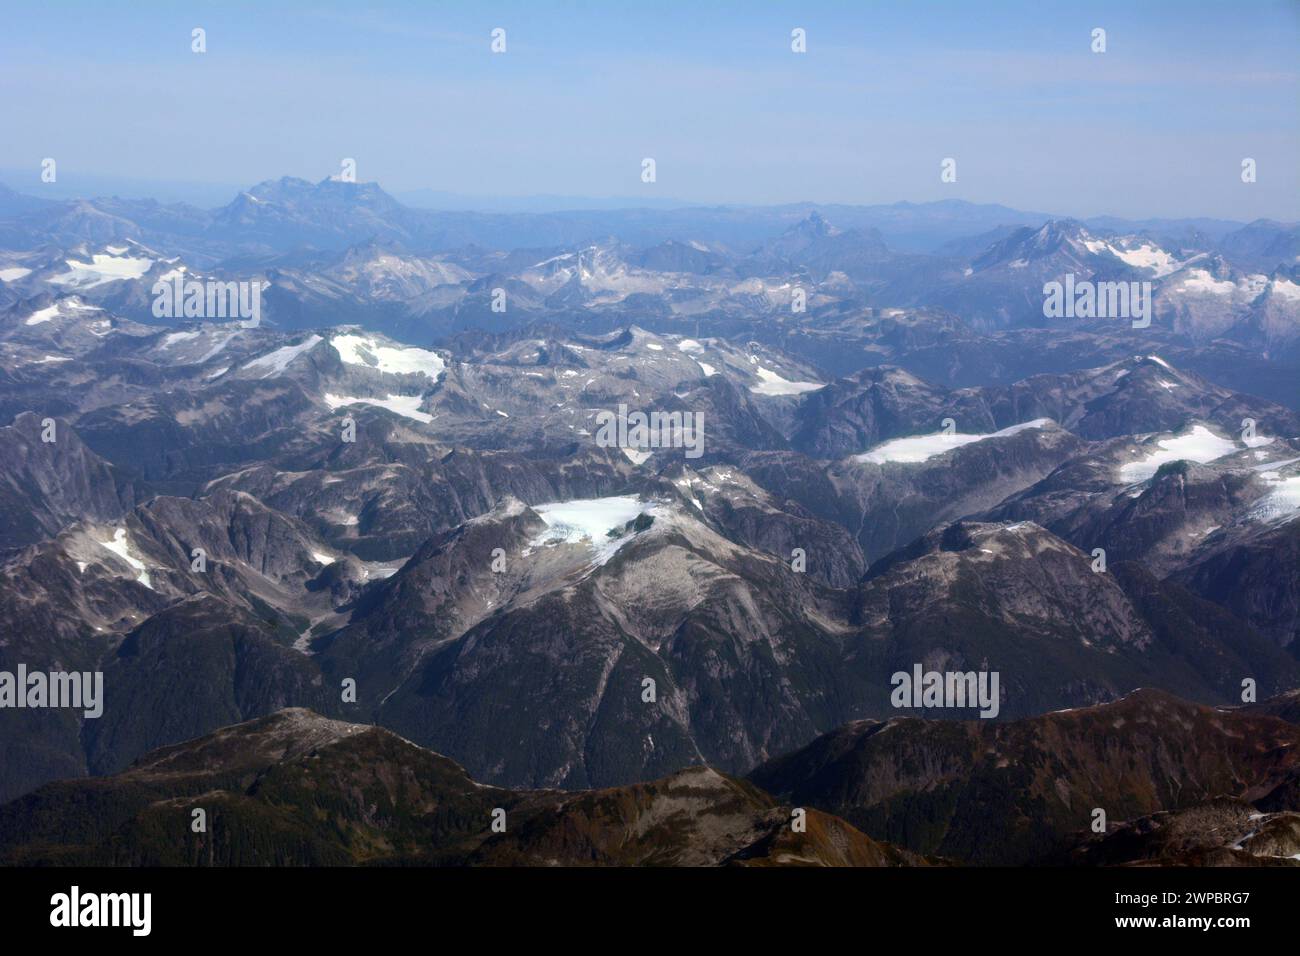 Vue aérienne des montagnes côtières de la Colombie-Britannique à la fin de l'été montrant la fonte et le recul glaciaires, près de Bella Coola, Colombie-Britannique, Canada. Banque D'Images